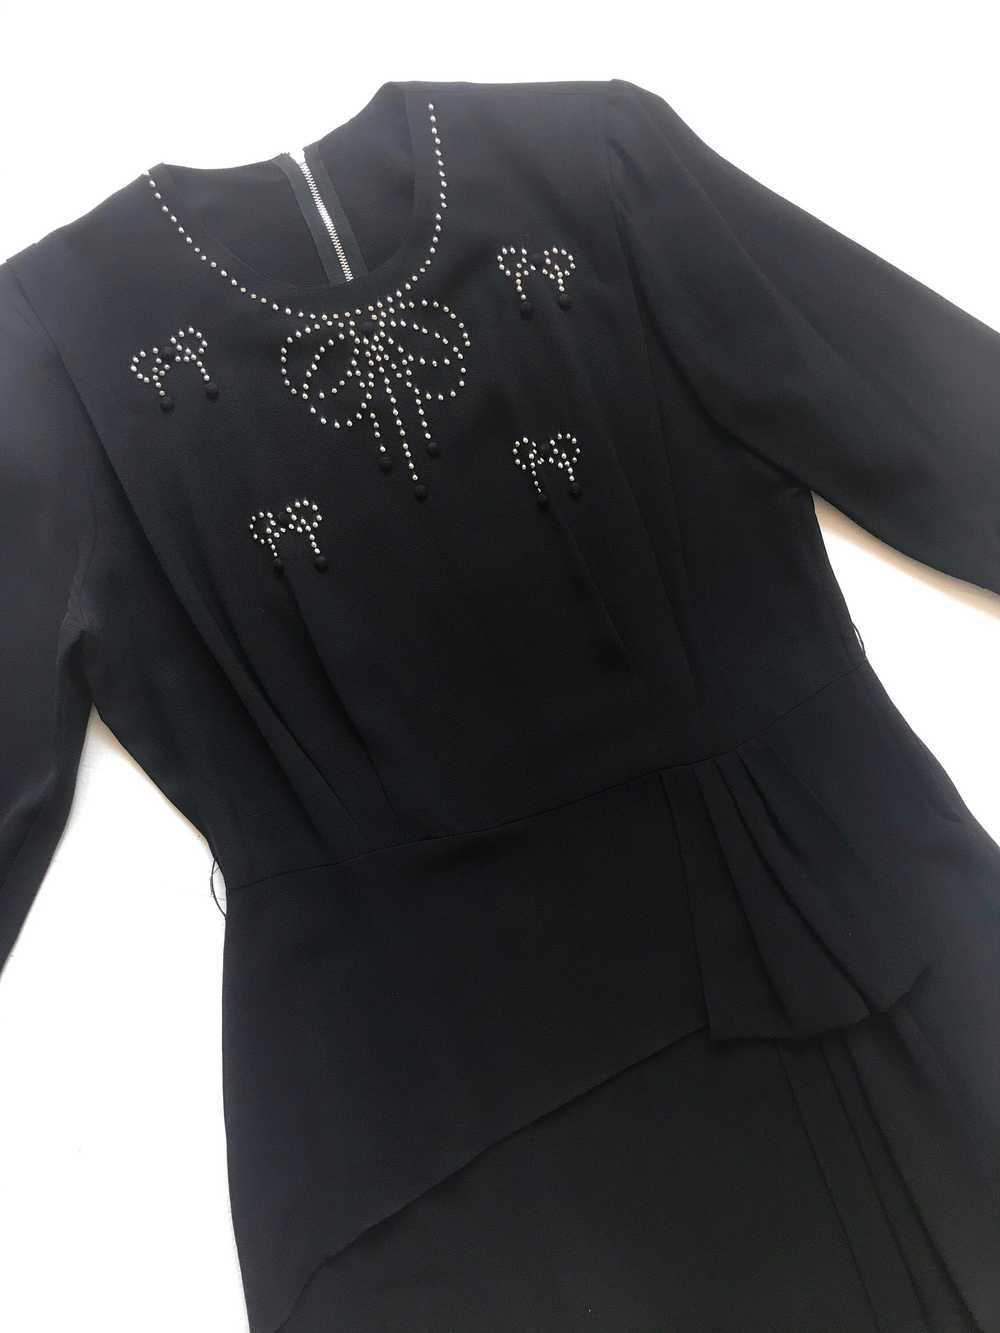 1940s Studded Black Crepe Rayon Dress - image 8